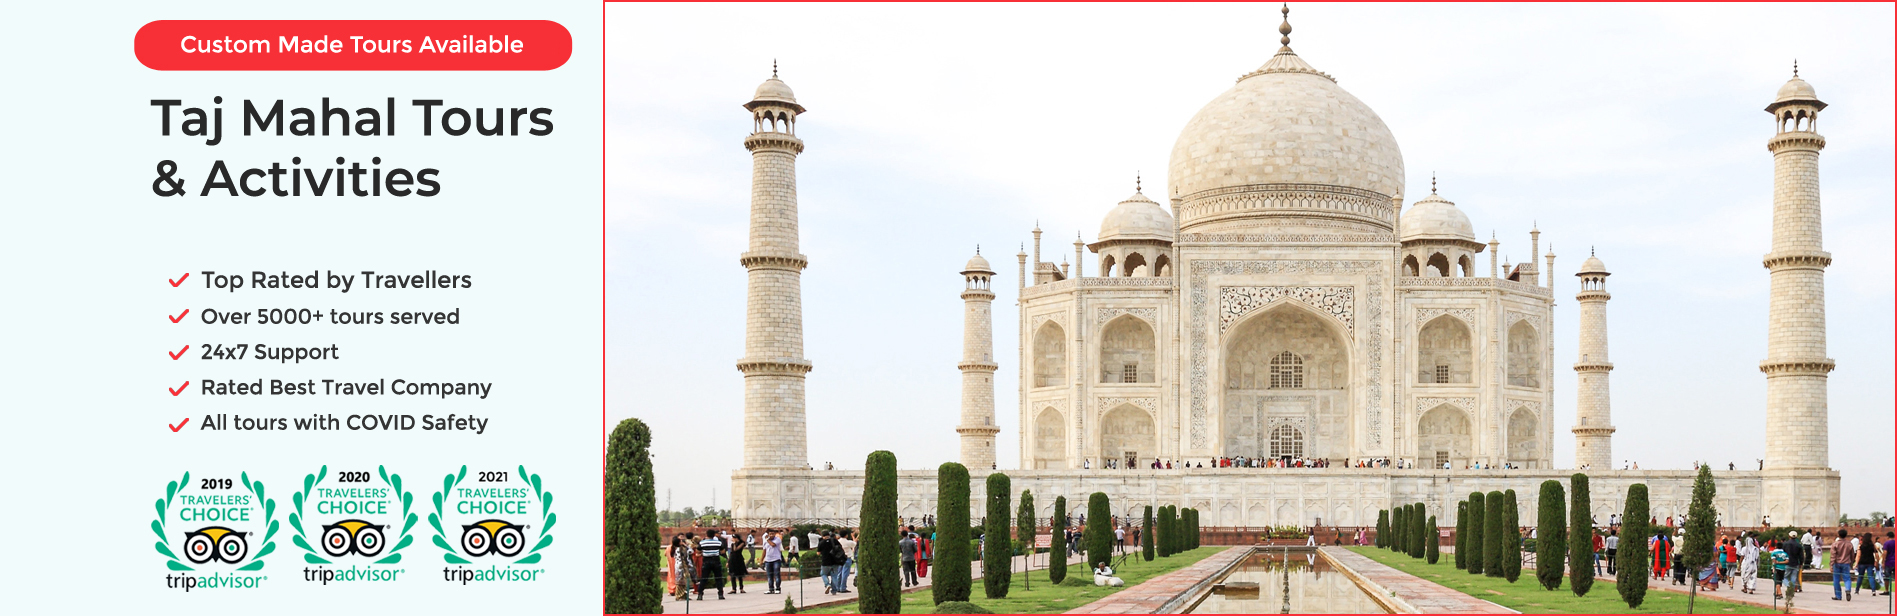 Taj-Mahal-Tours